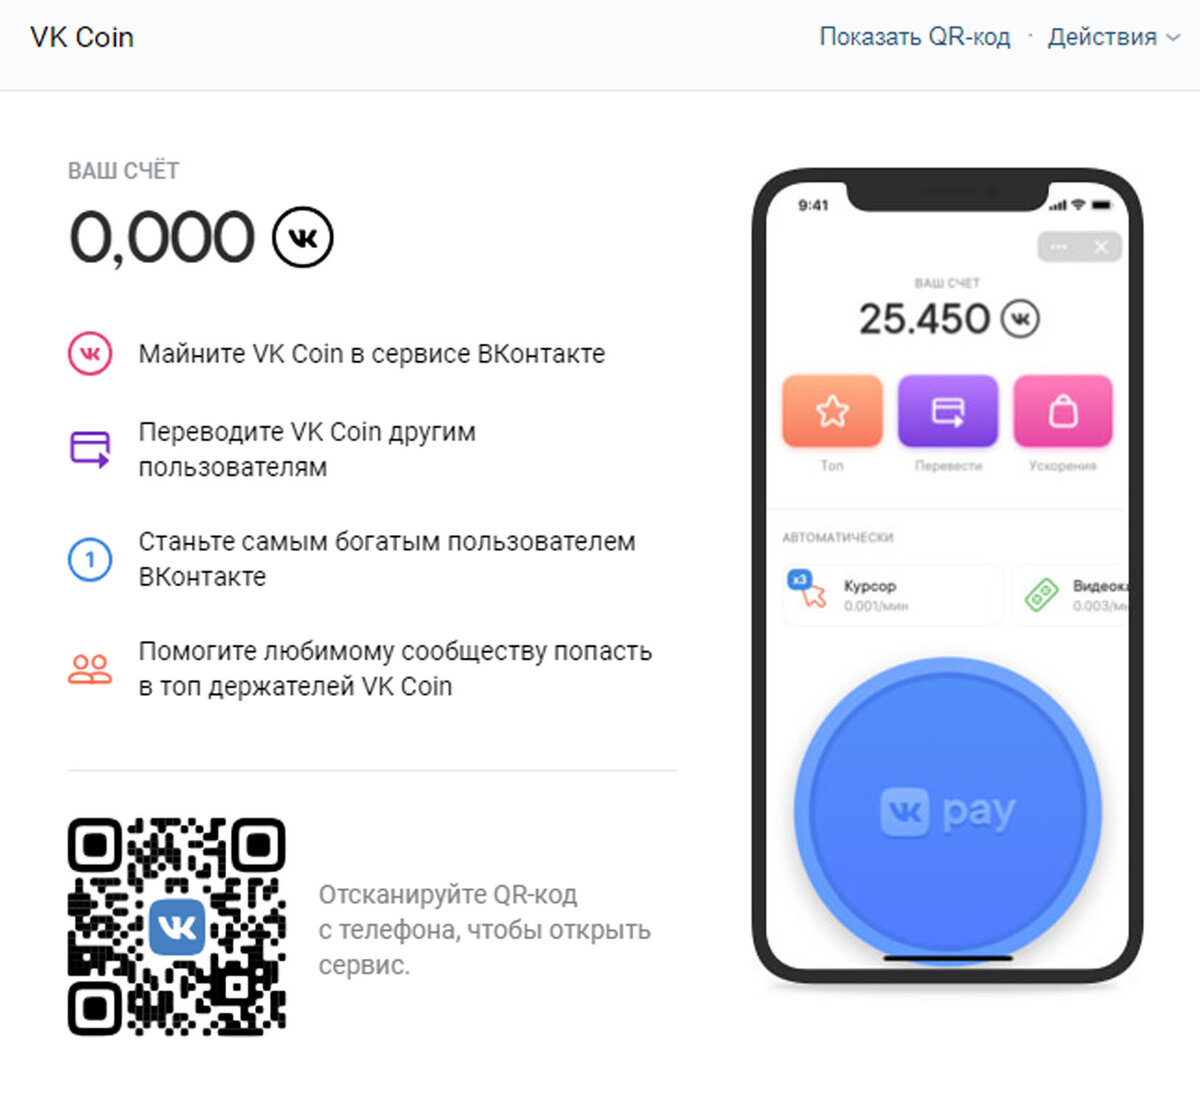 1 апреля Happy Santa - разработчик приложений для Вконтакте, запустили шуточную игру-кликер VK coin на мобильных устройствах, где всем пользователям предлагалось нажимать на большую синюю кнопку за...